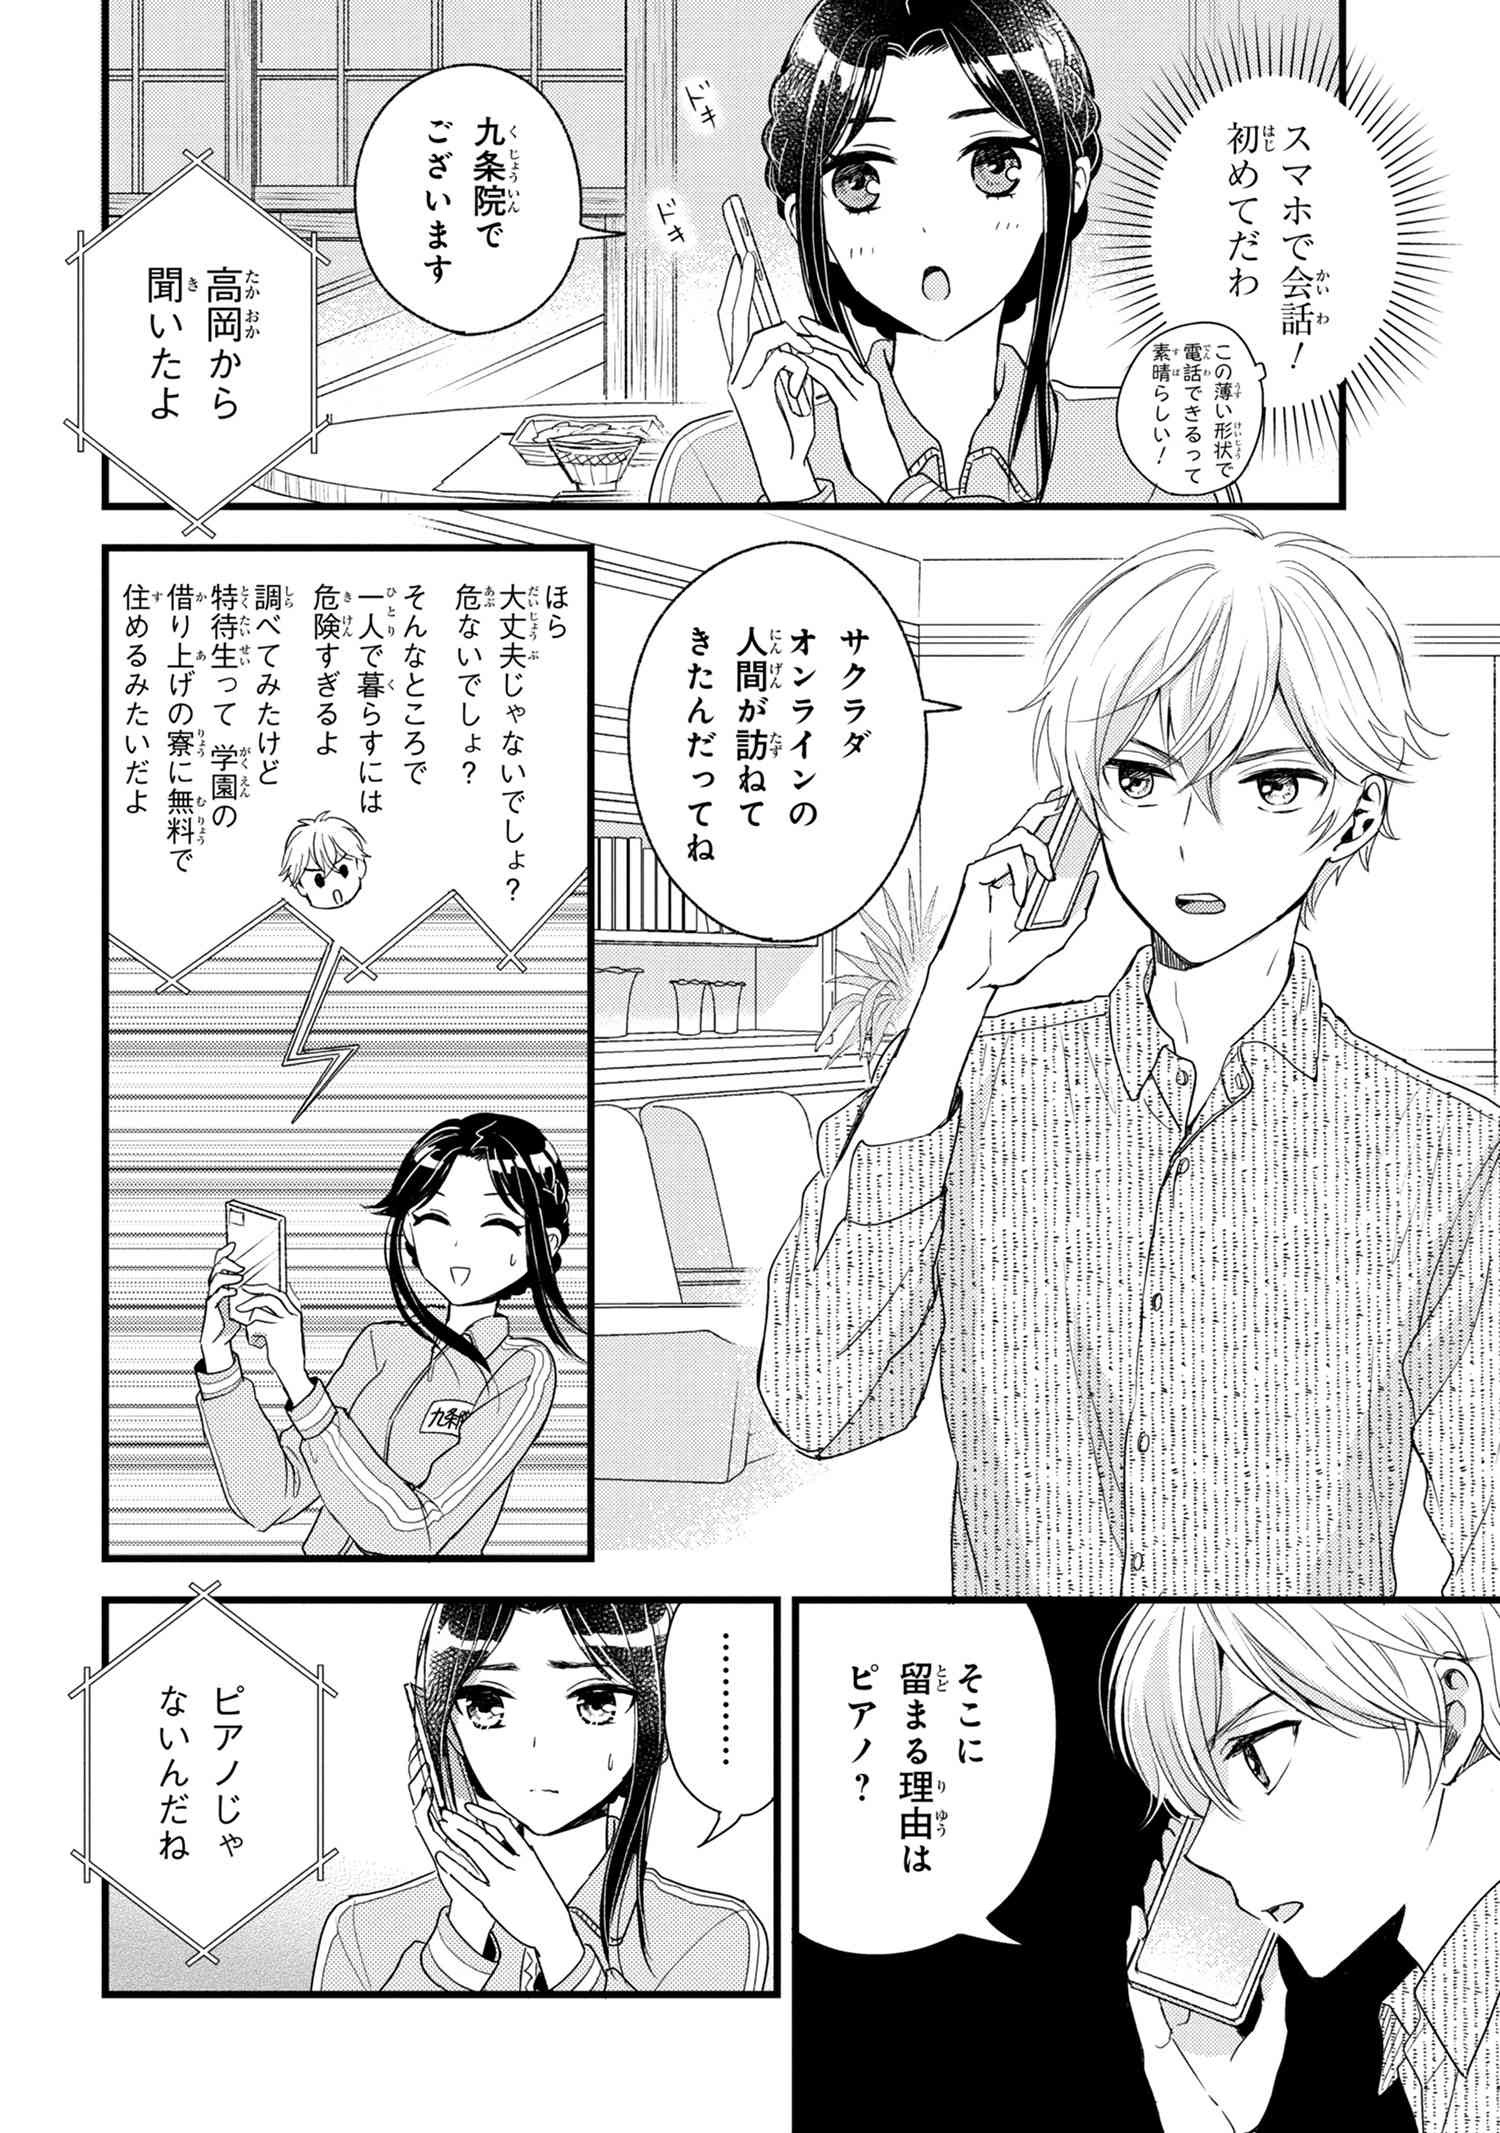 Reiko no Fuugi Akuyaku Reijou to Yobarete imasu ga, tada no Binbou Musume desu - Chapter 6-2 - Page 4